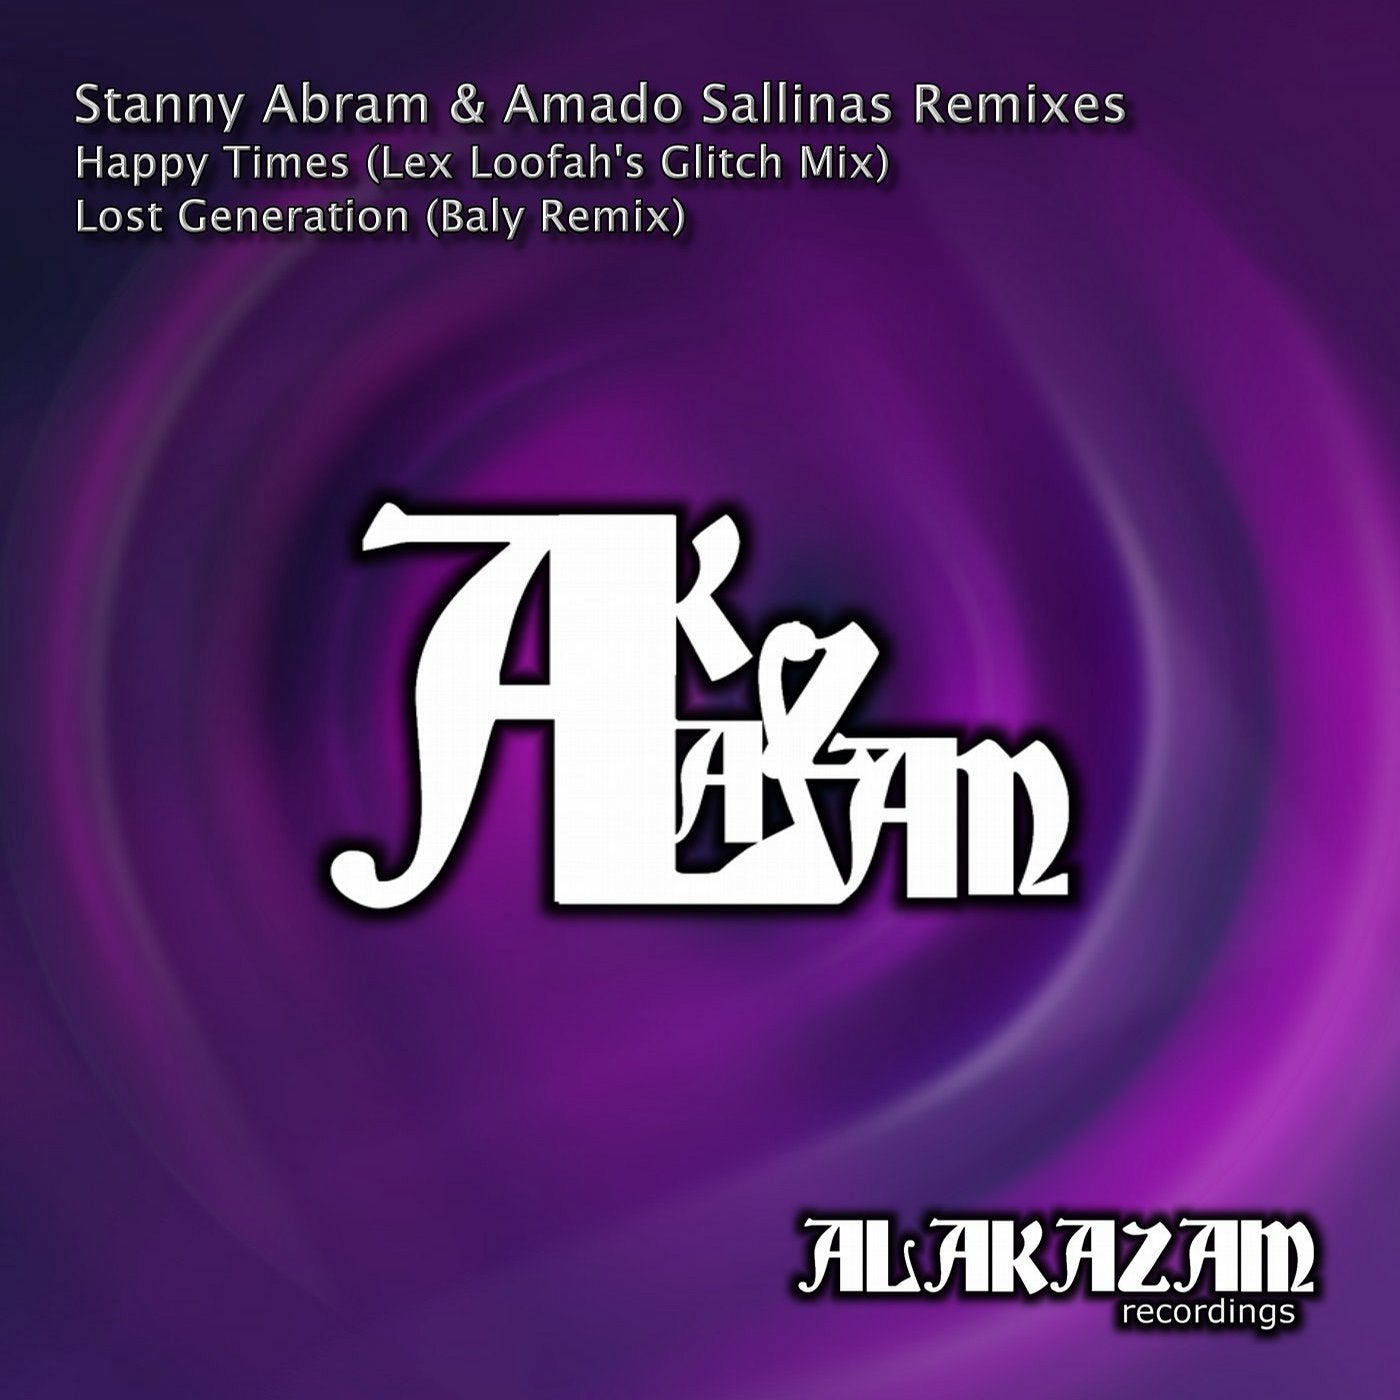 Stanny Abram & Amado Sallinas Remixes